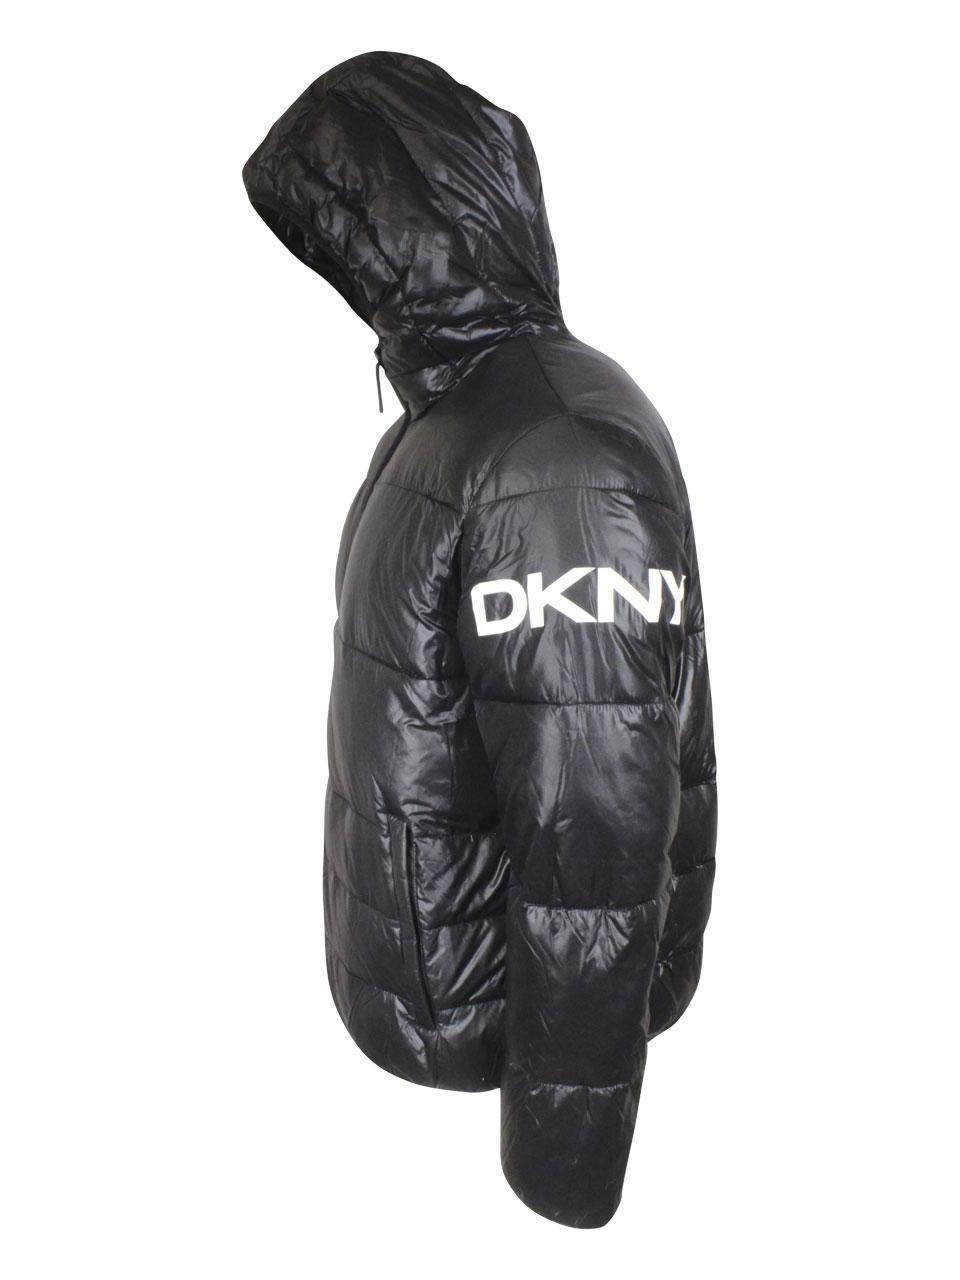 dkny men's hooded puffer jacket